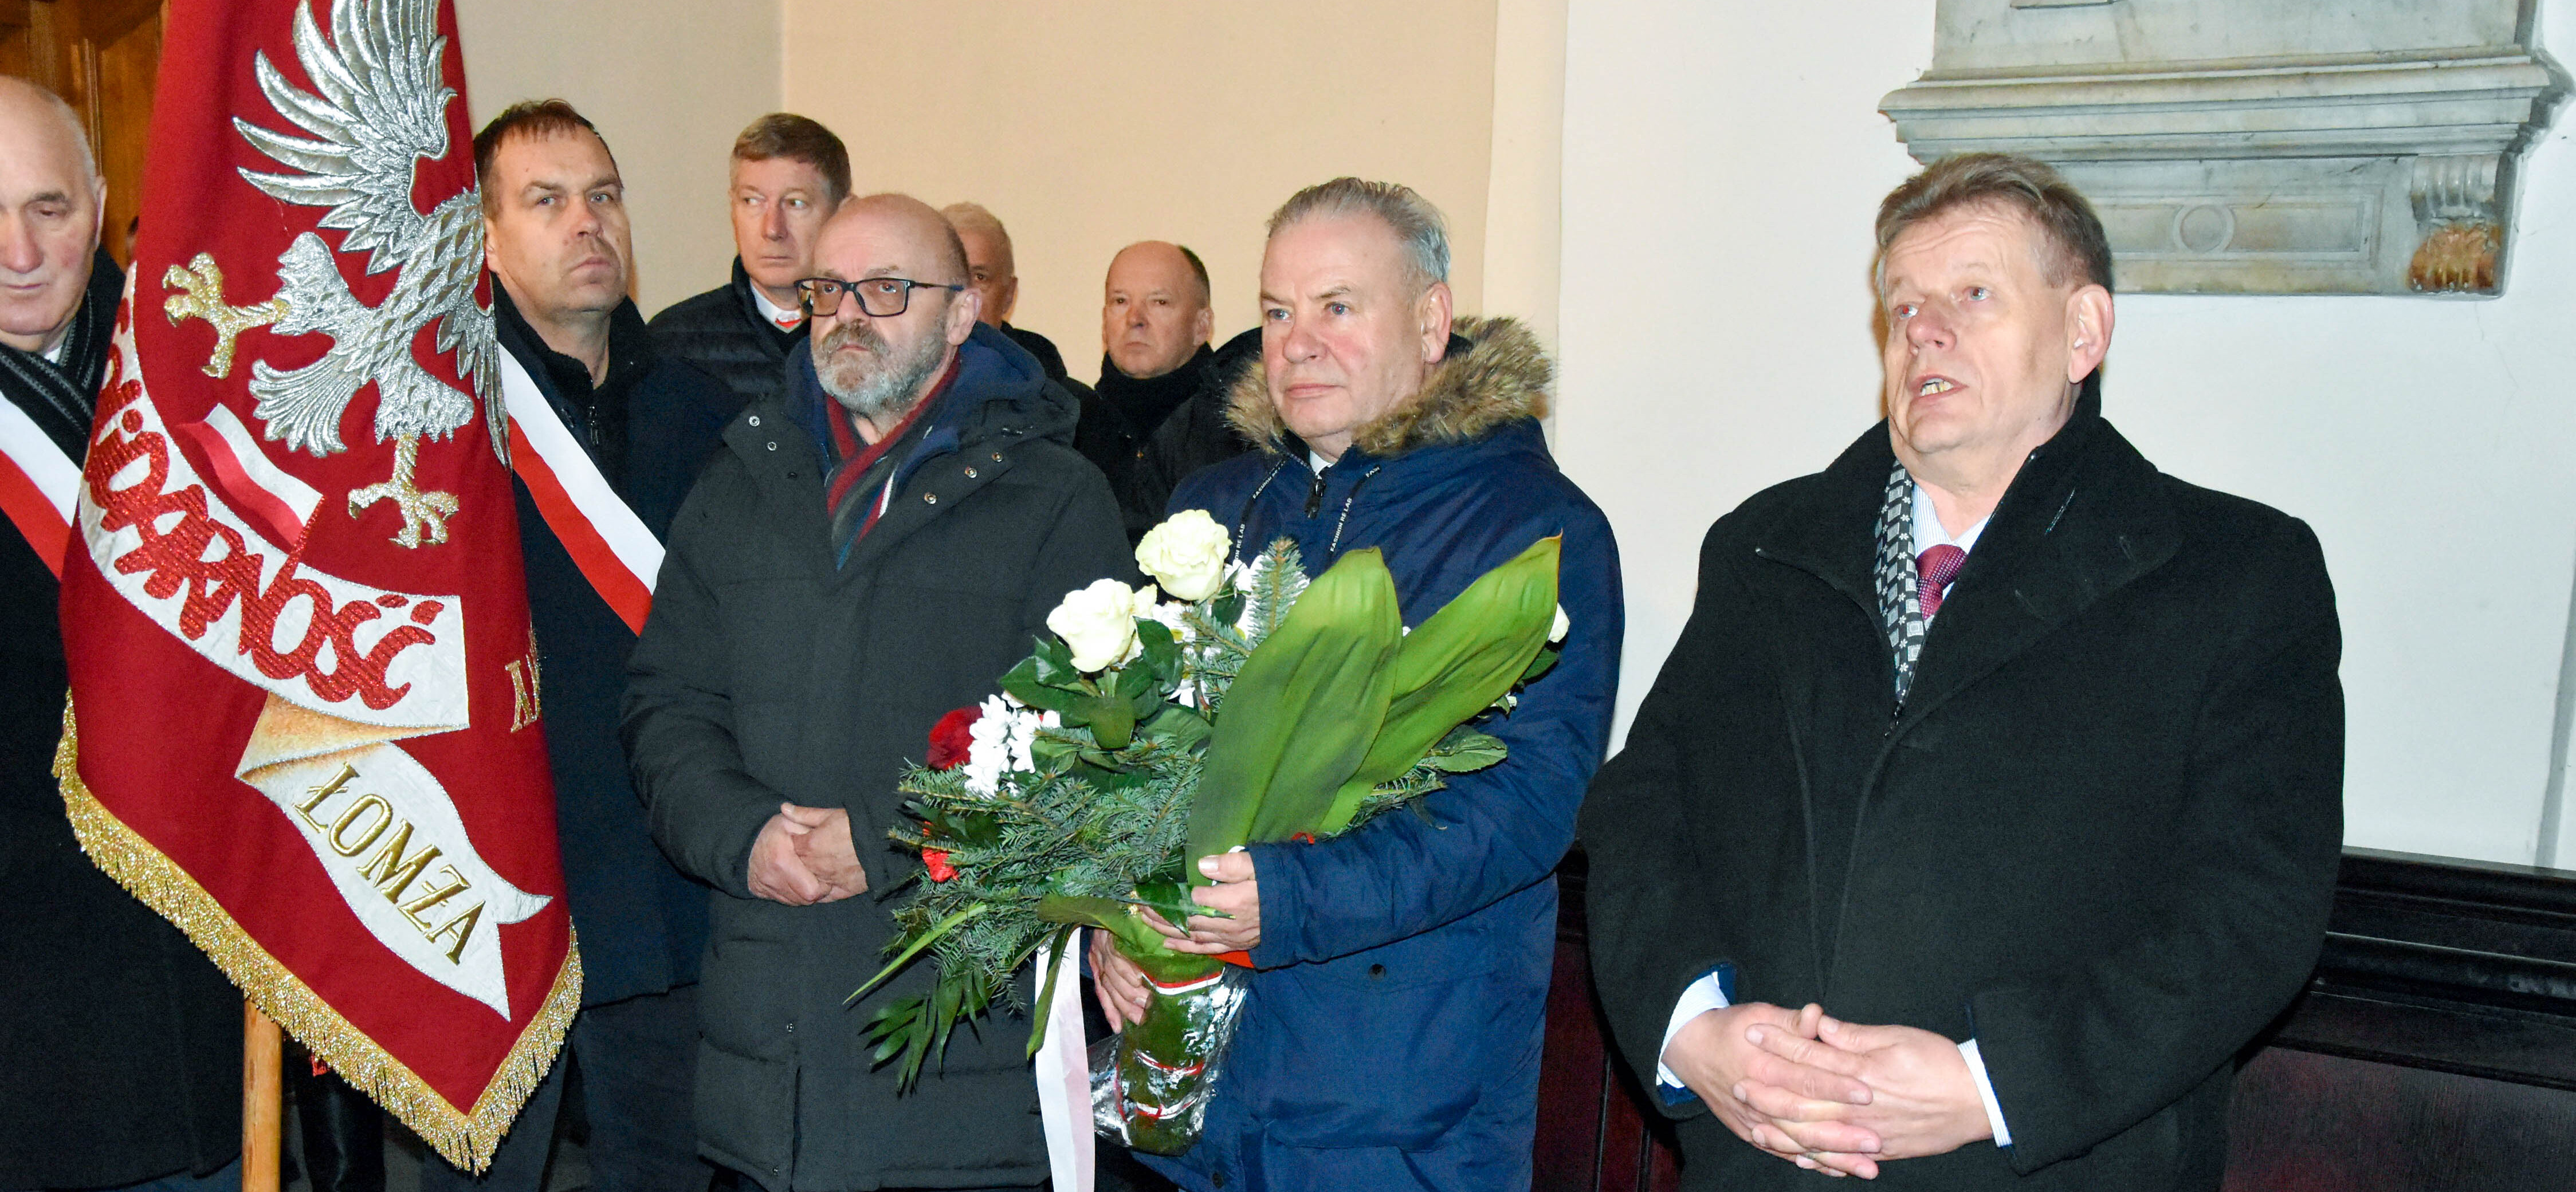 Marszałek Olbryś trzyma kwiaty, obok stoją uczestnicy wydarzenia